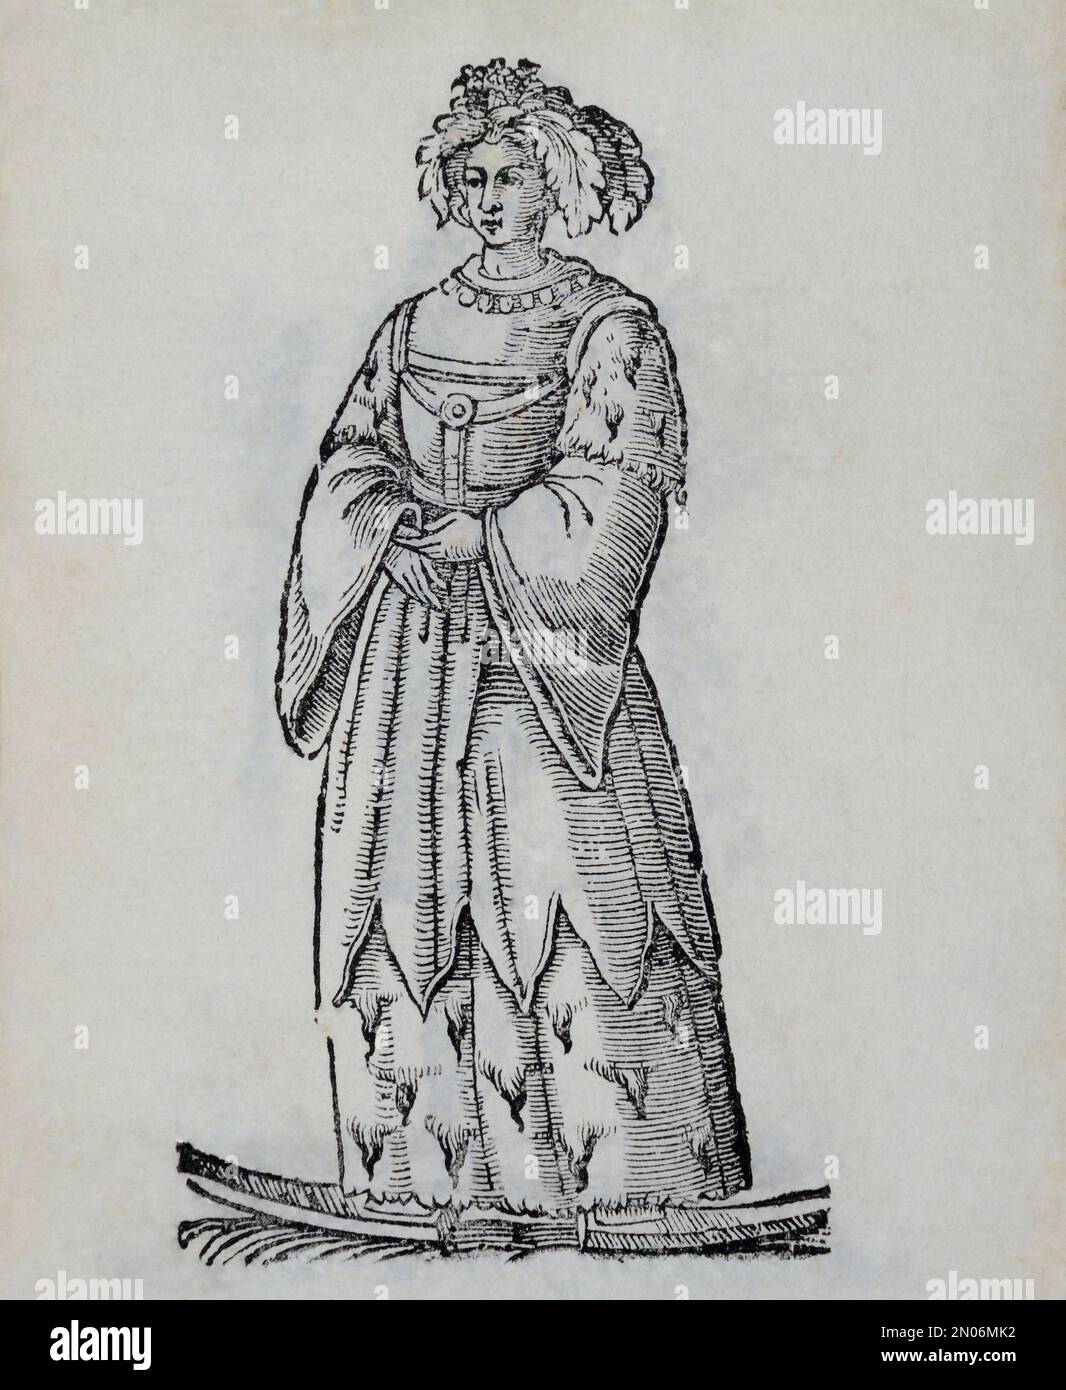 Ein sehr frühes Bild einer weiblichen Laplanerin, Sami, mit Kopfbedeckung, Pelzrock, Himmel in ihren Füßen. Dieser schmückende Holzschnitt aus dem Stockfoto